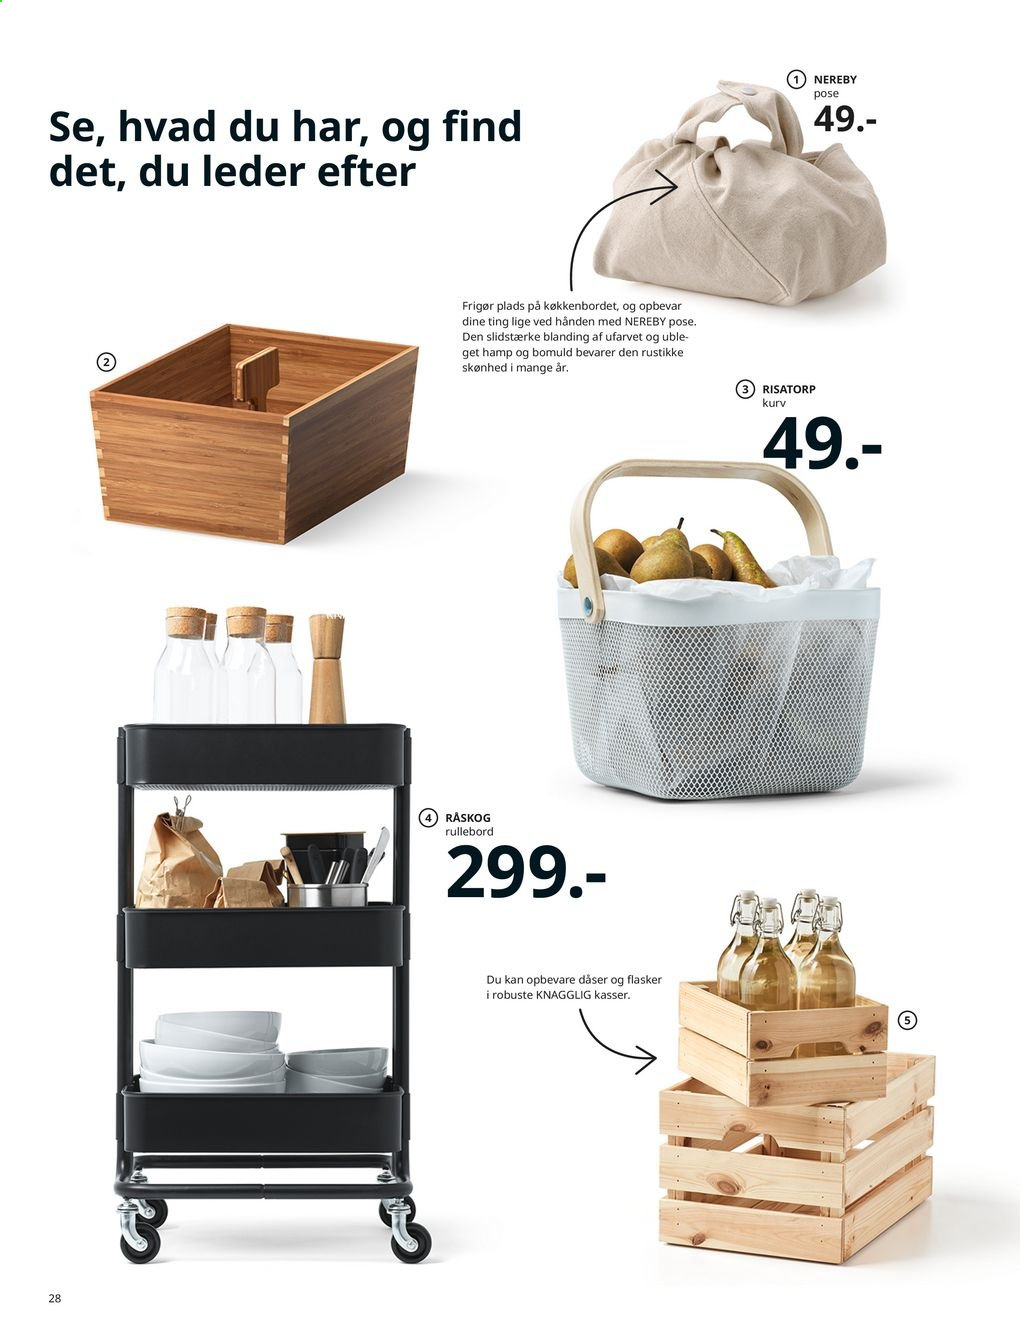 IKEA tilbudsavis . Side 28.